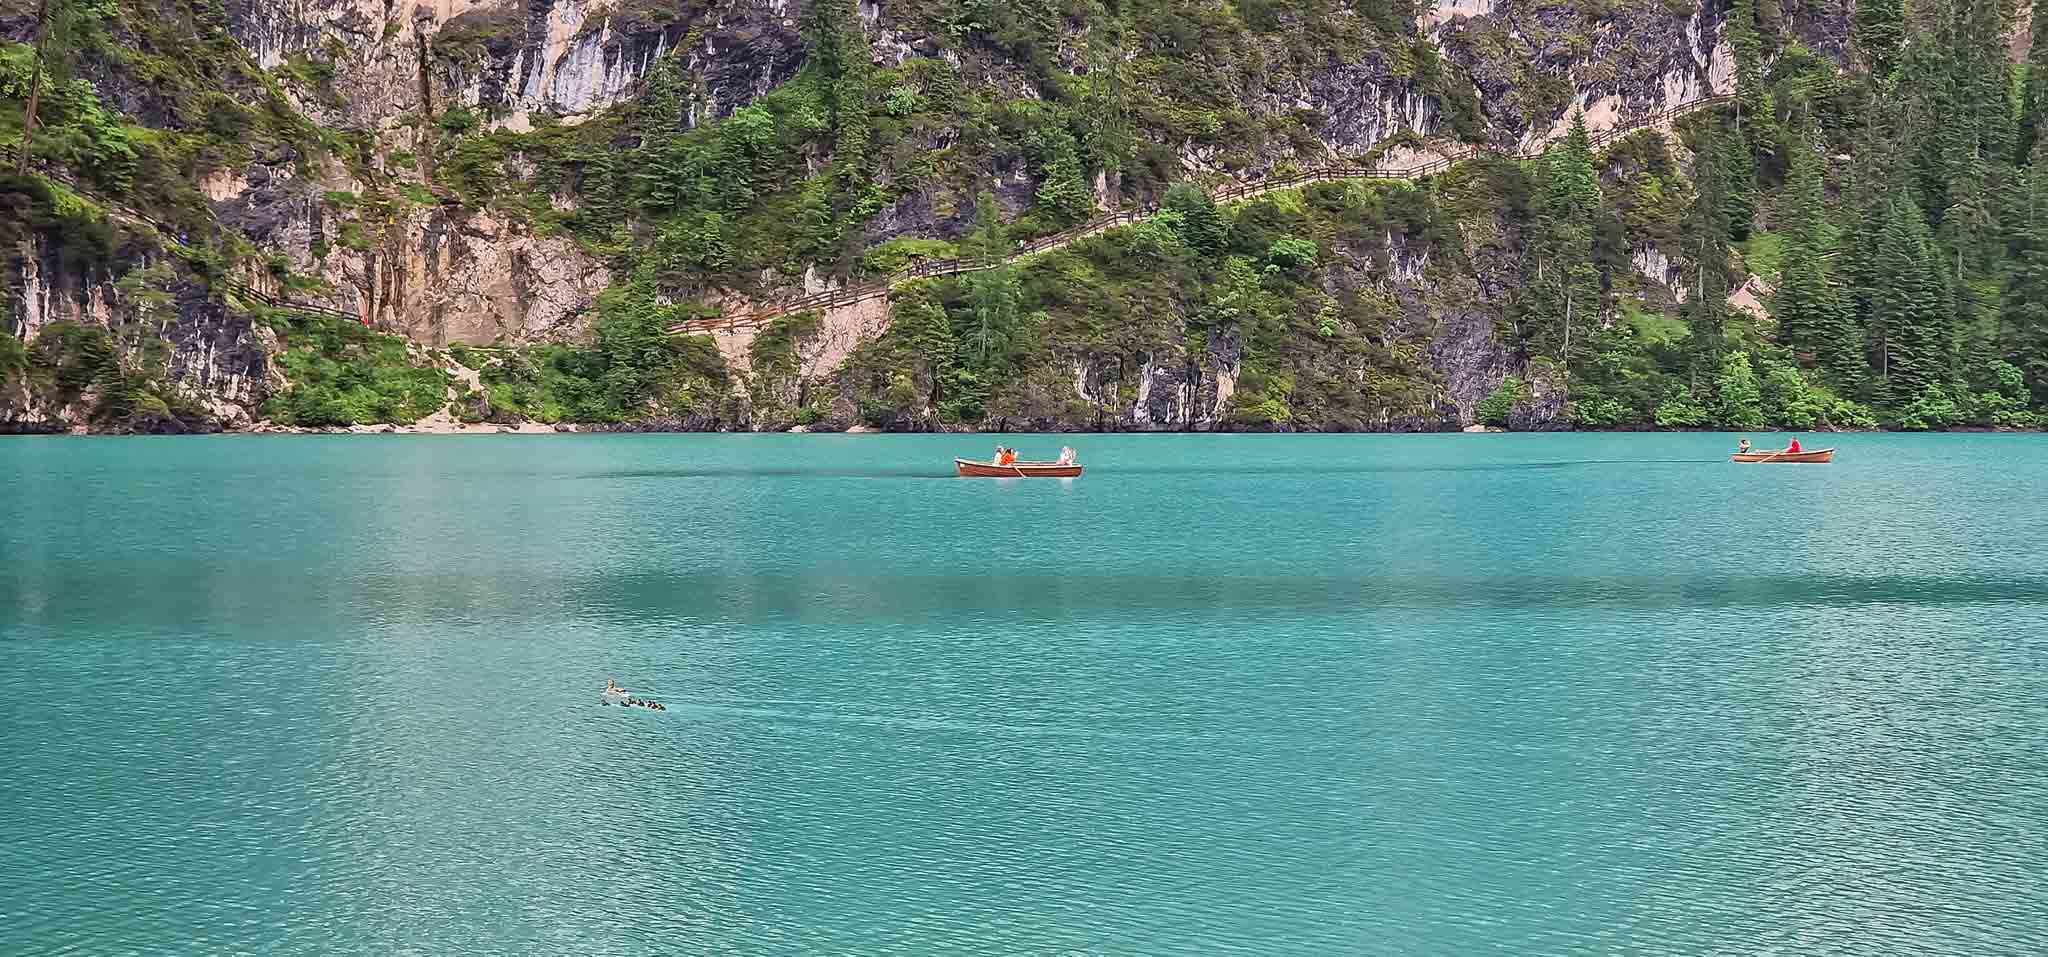 Lago di Braies, hồ nước xanh biếc ở miền Bắc nước Ý